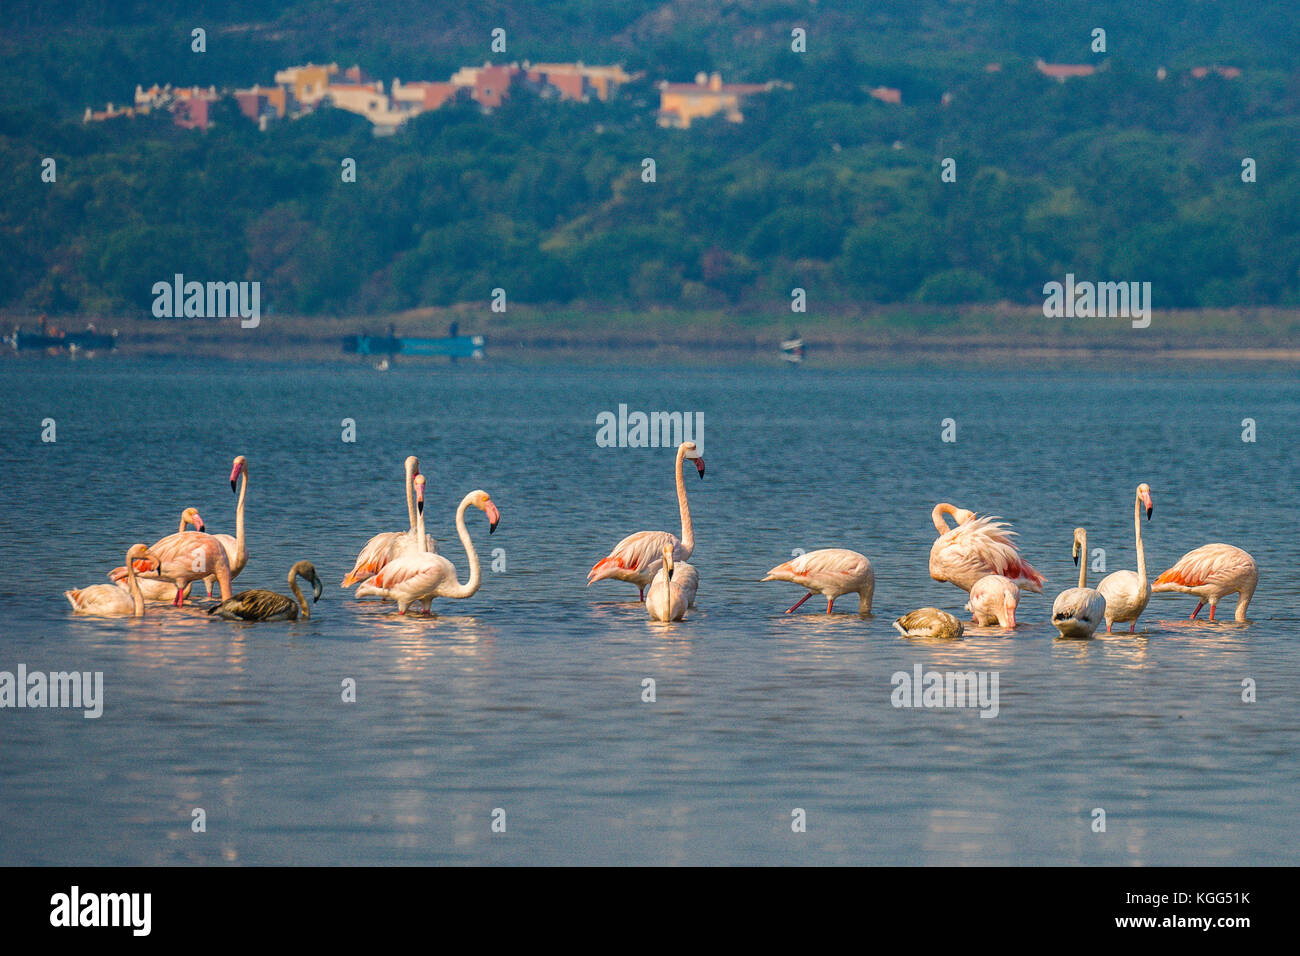 Flamingos Feeding On A Misty Obidos Lagoon Portugal Stock Photo Alamy